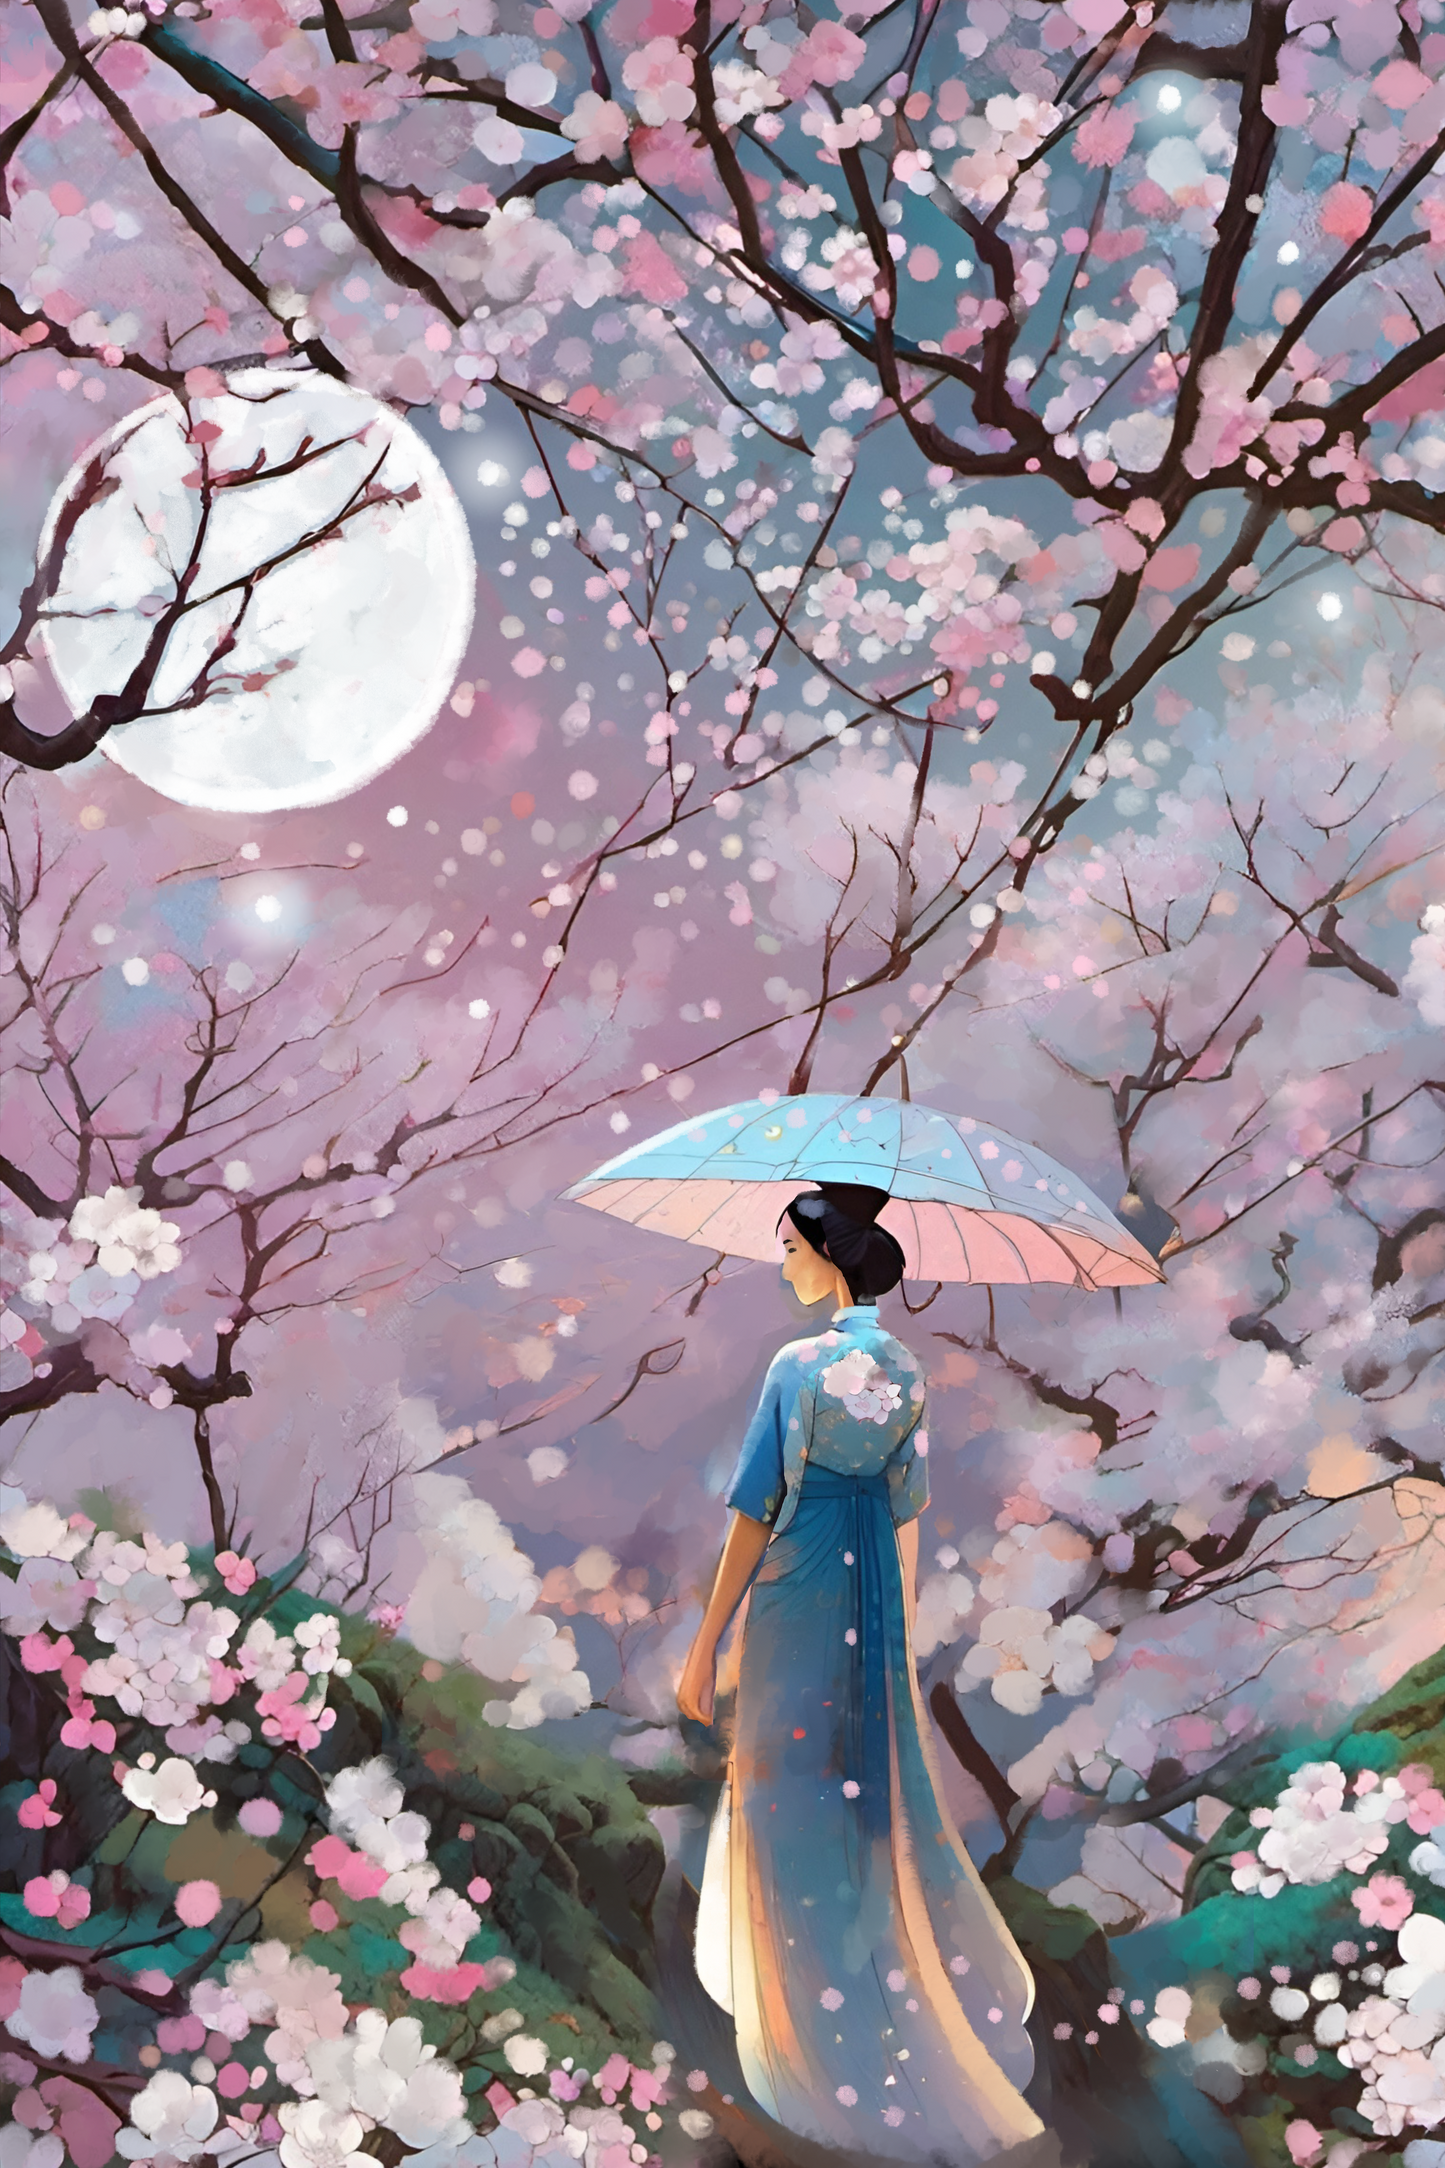 Sakura - Illustrated Print by Thomas Little